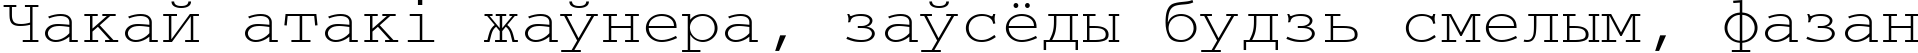 Пример написания шрифтом CourierCyrillic текста на белорусском